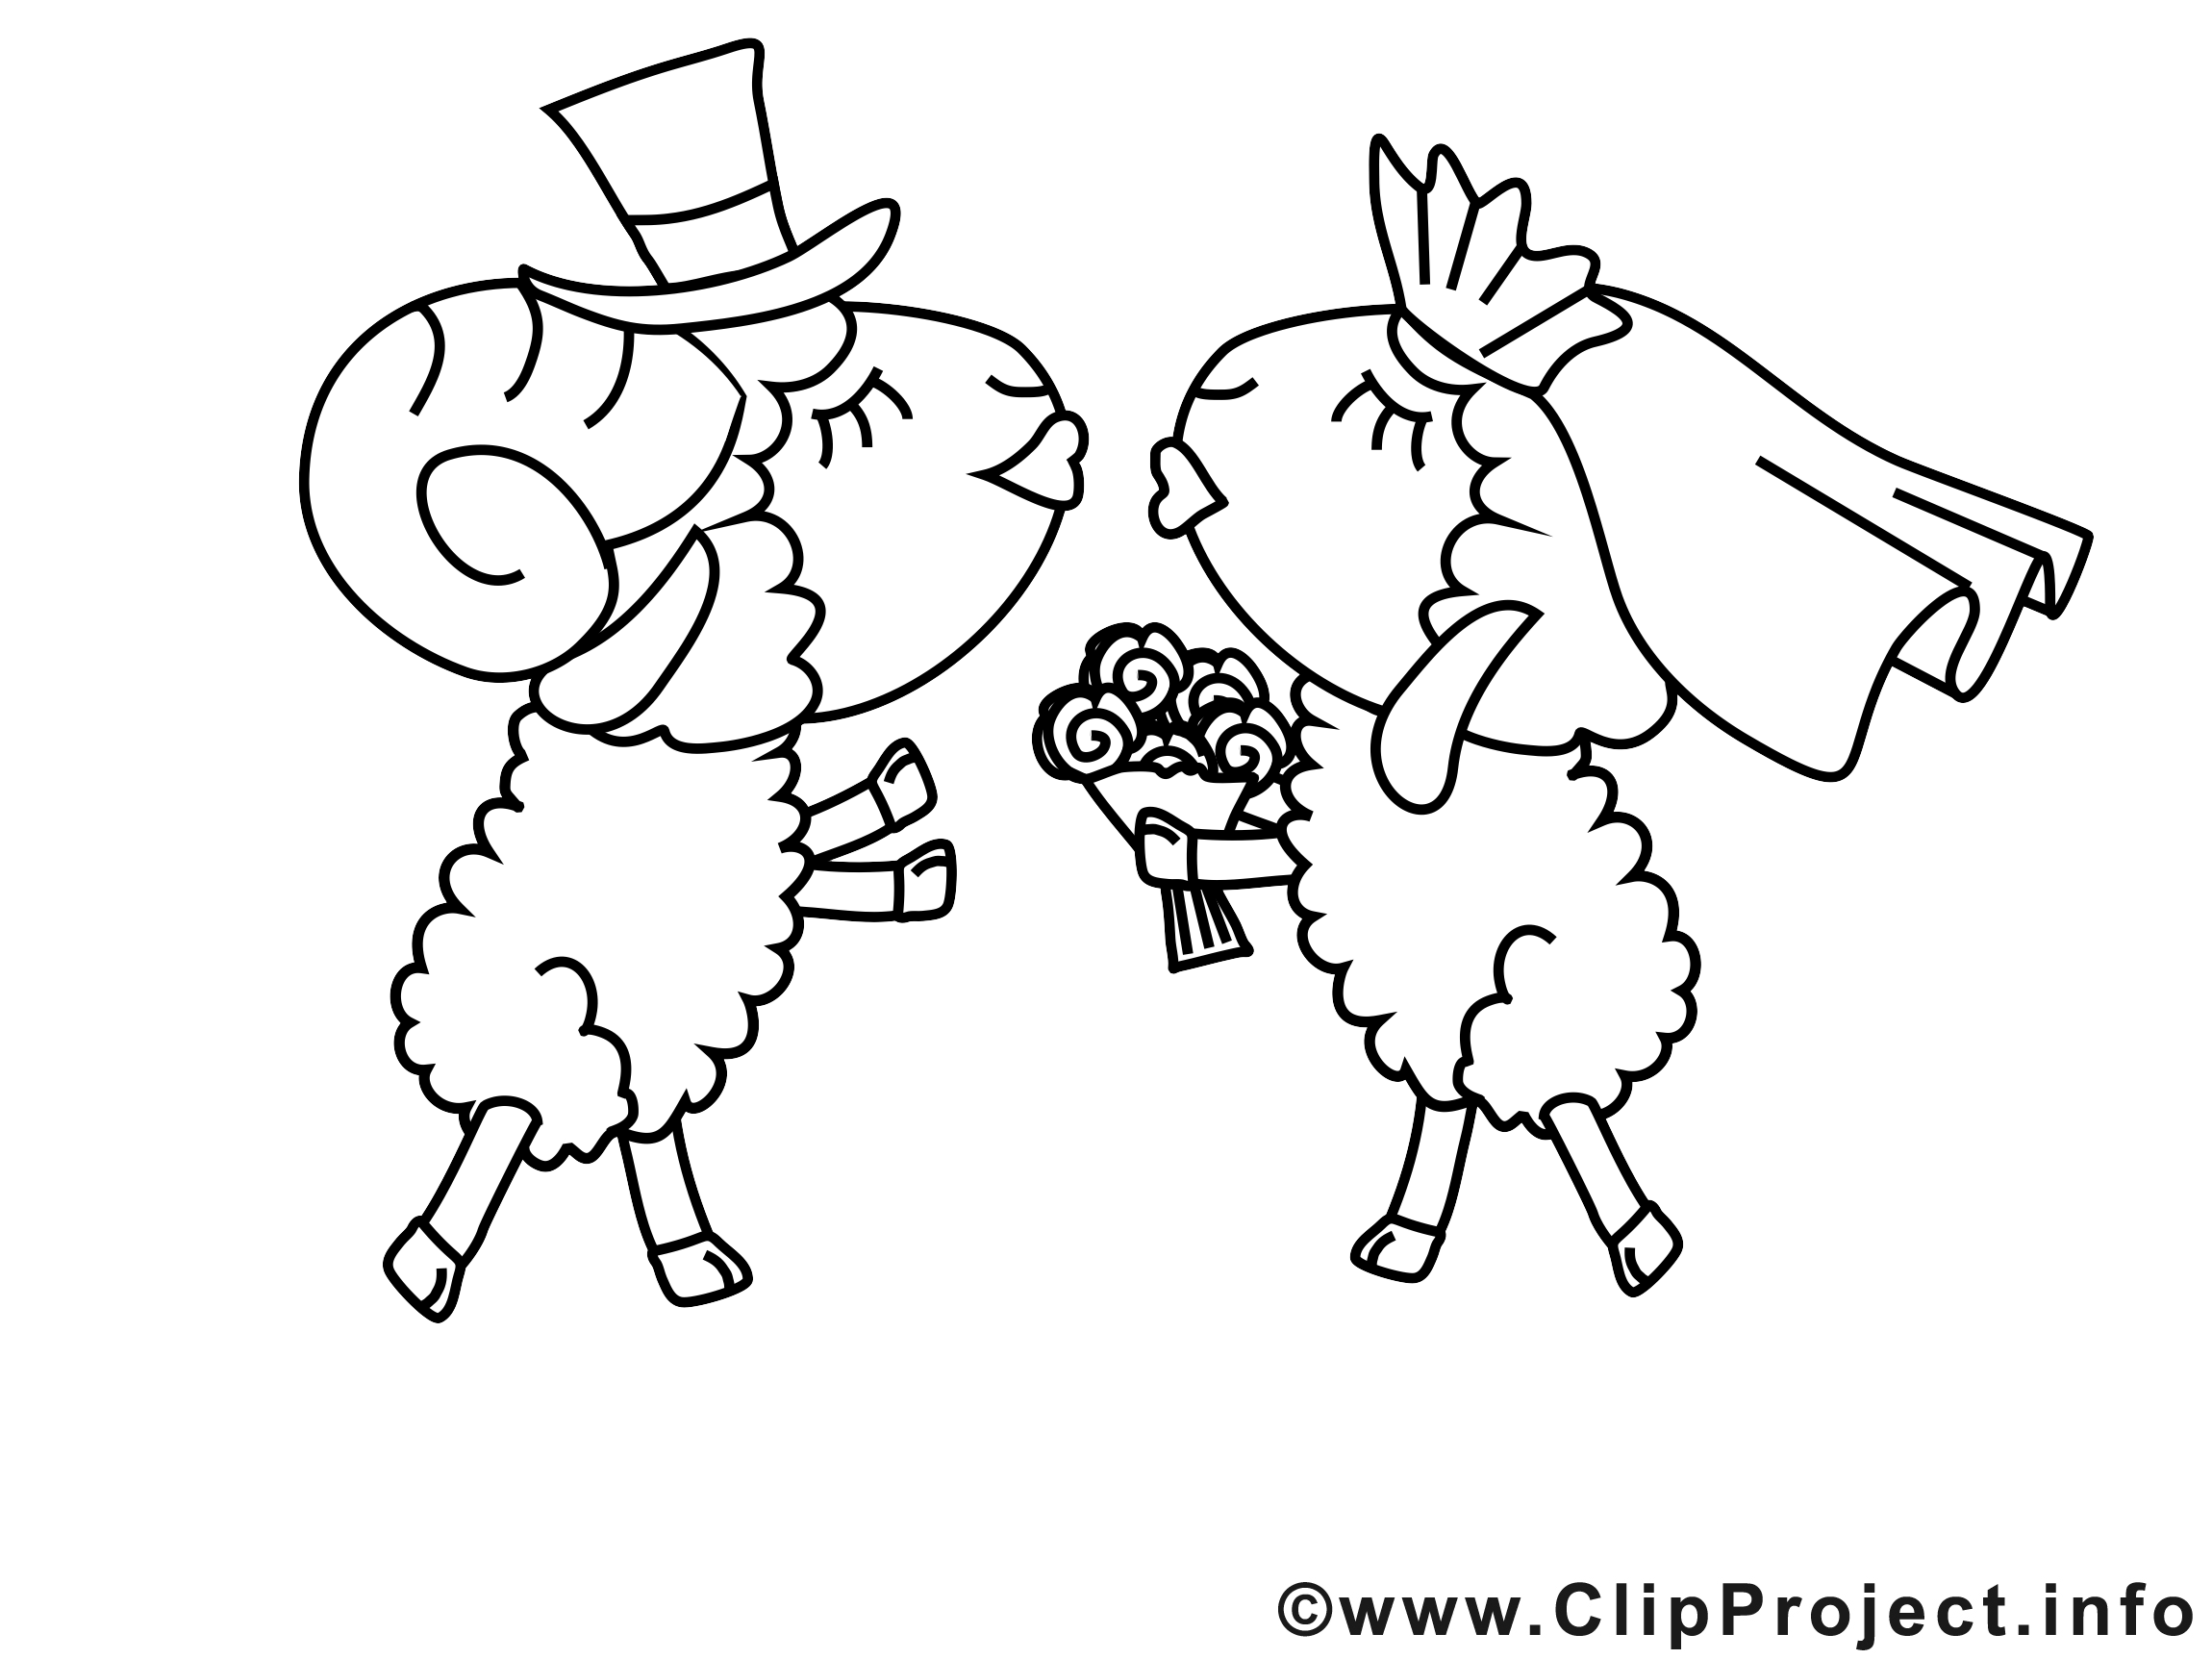 Moutons image – Saint-valentin images à colorier